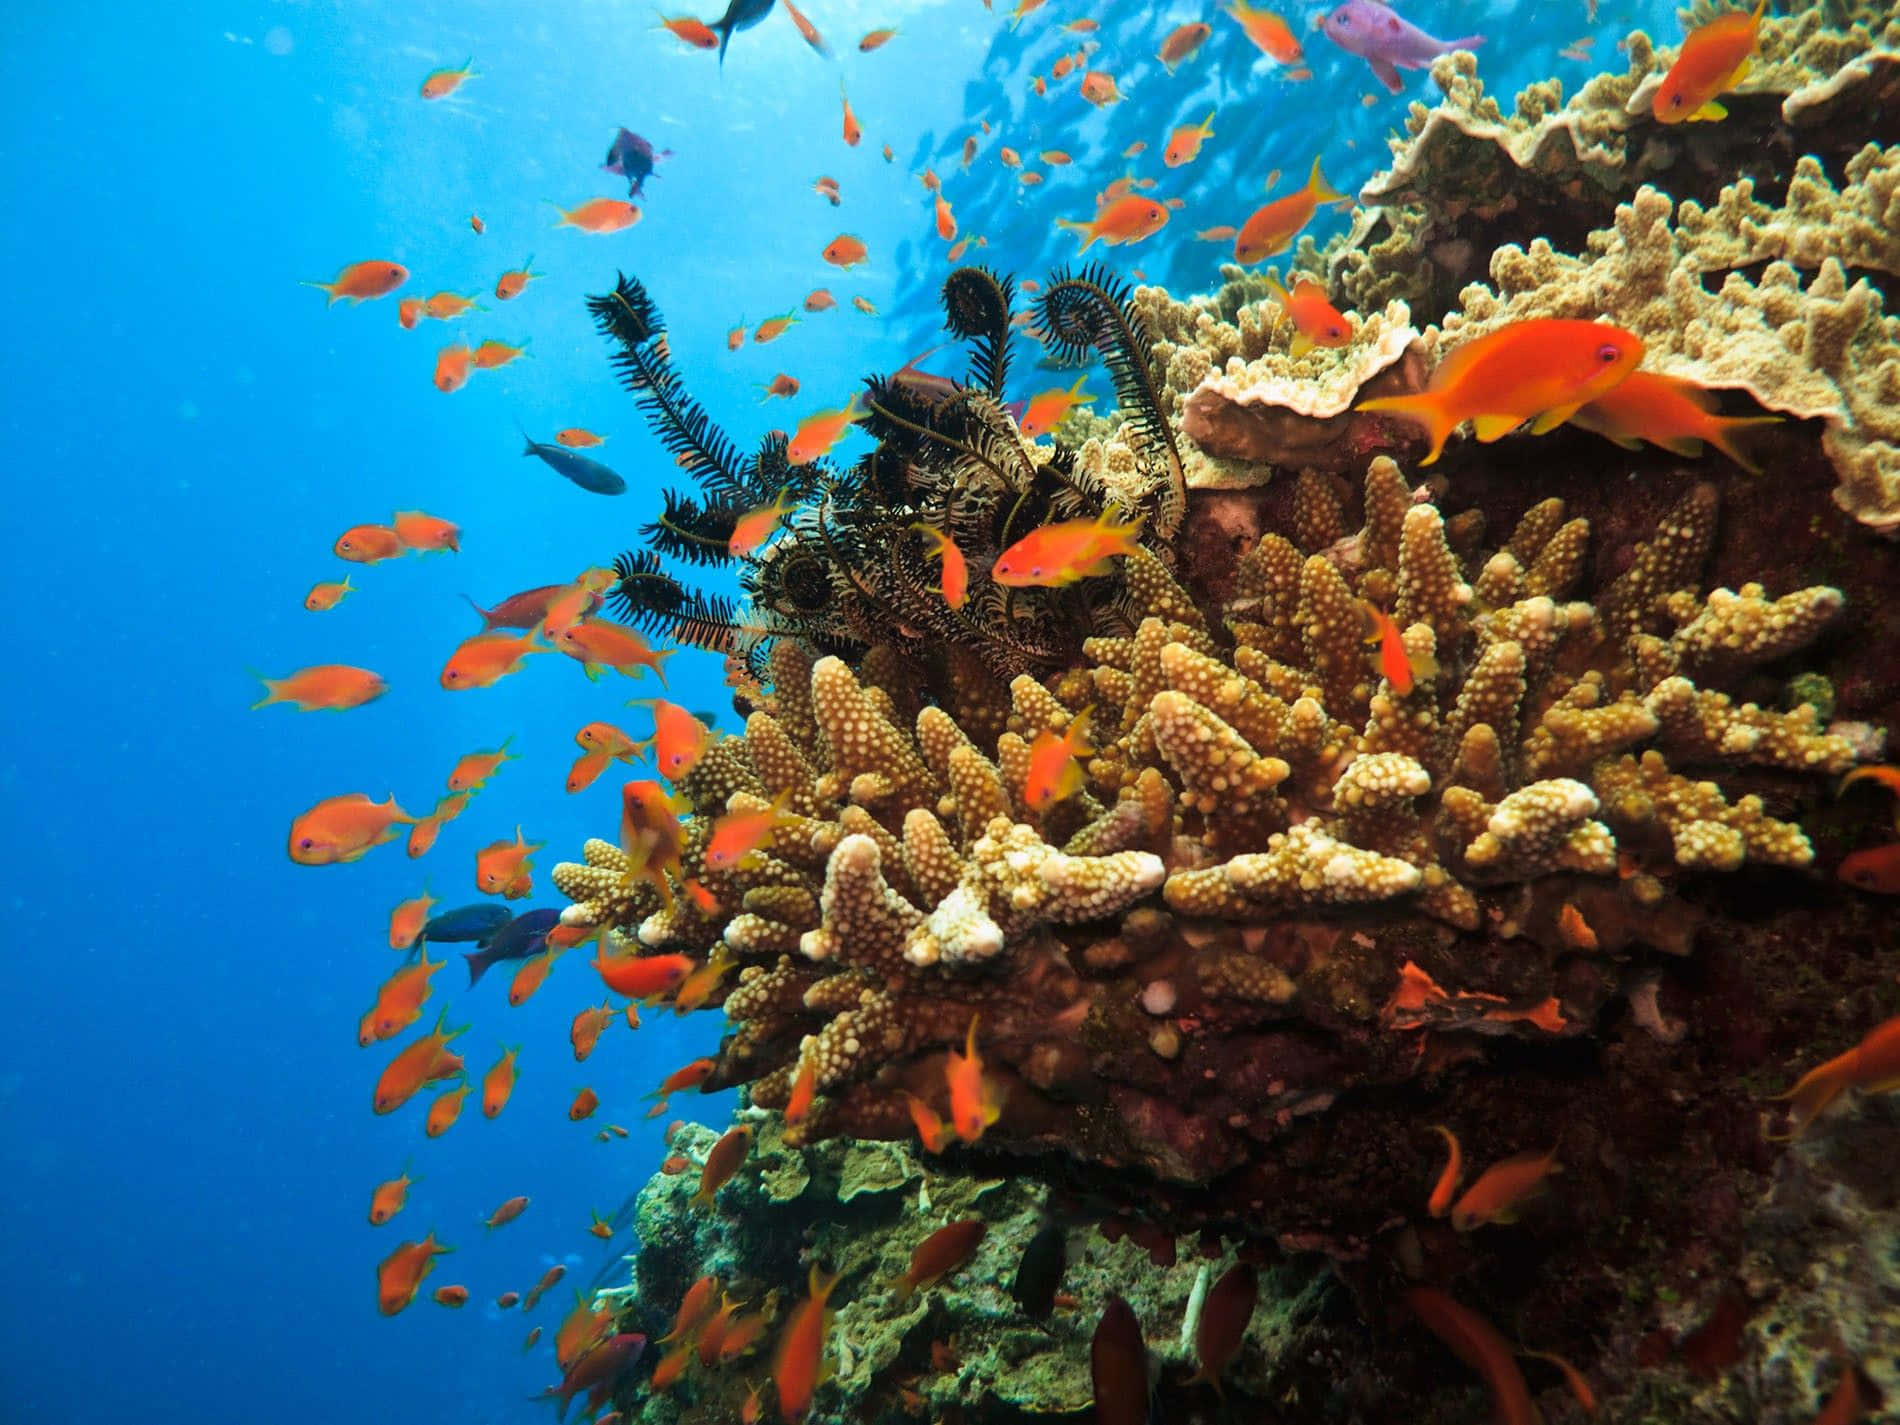 Imagende Un Océano Con Un Arrecife De Coral Y Peces De Un Brillante Color Naranja.